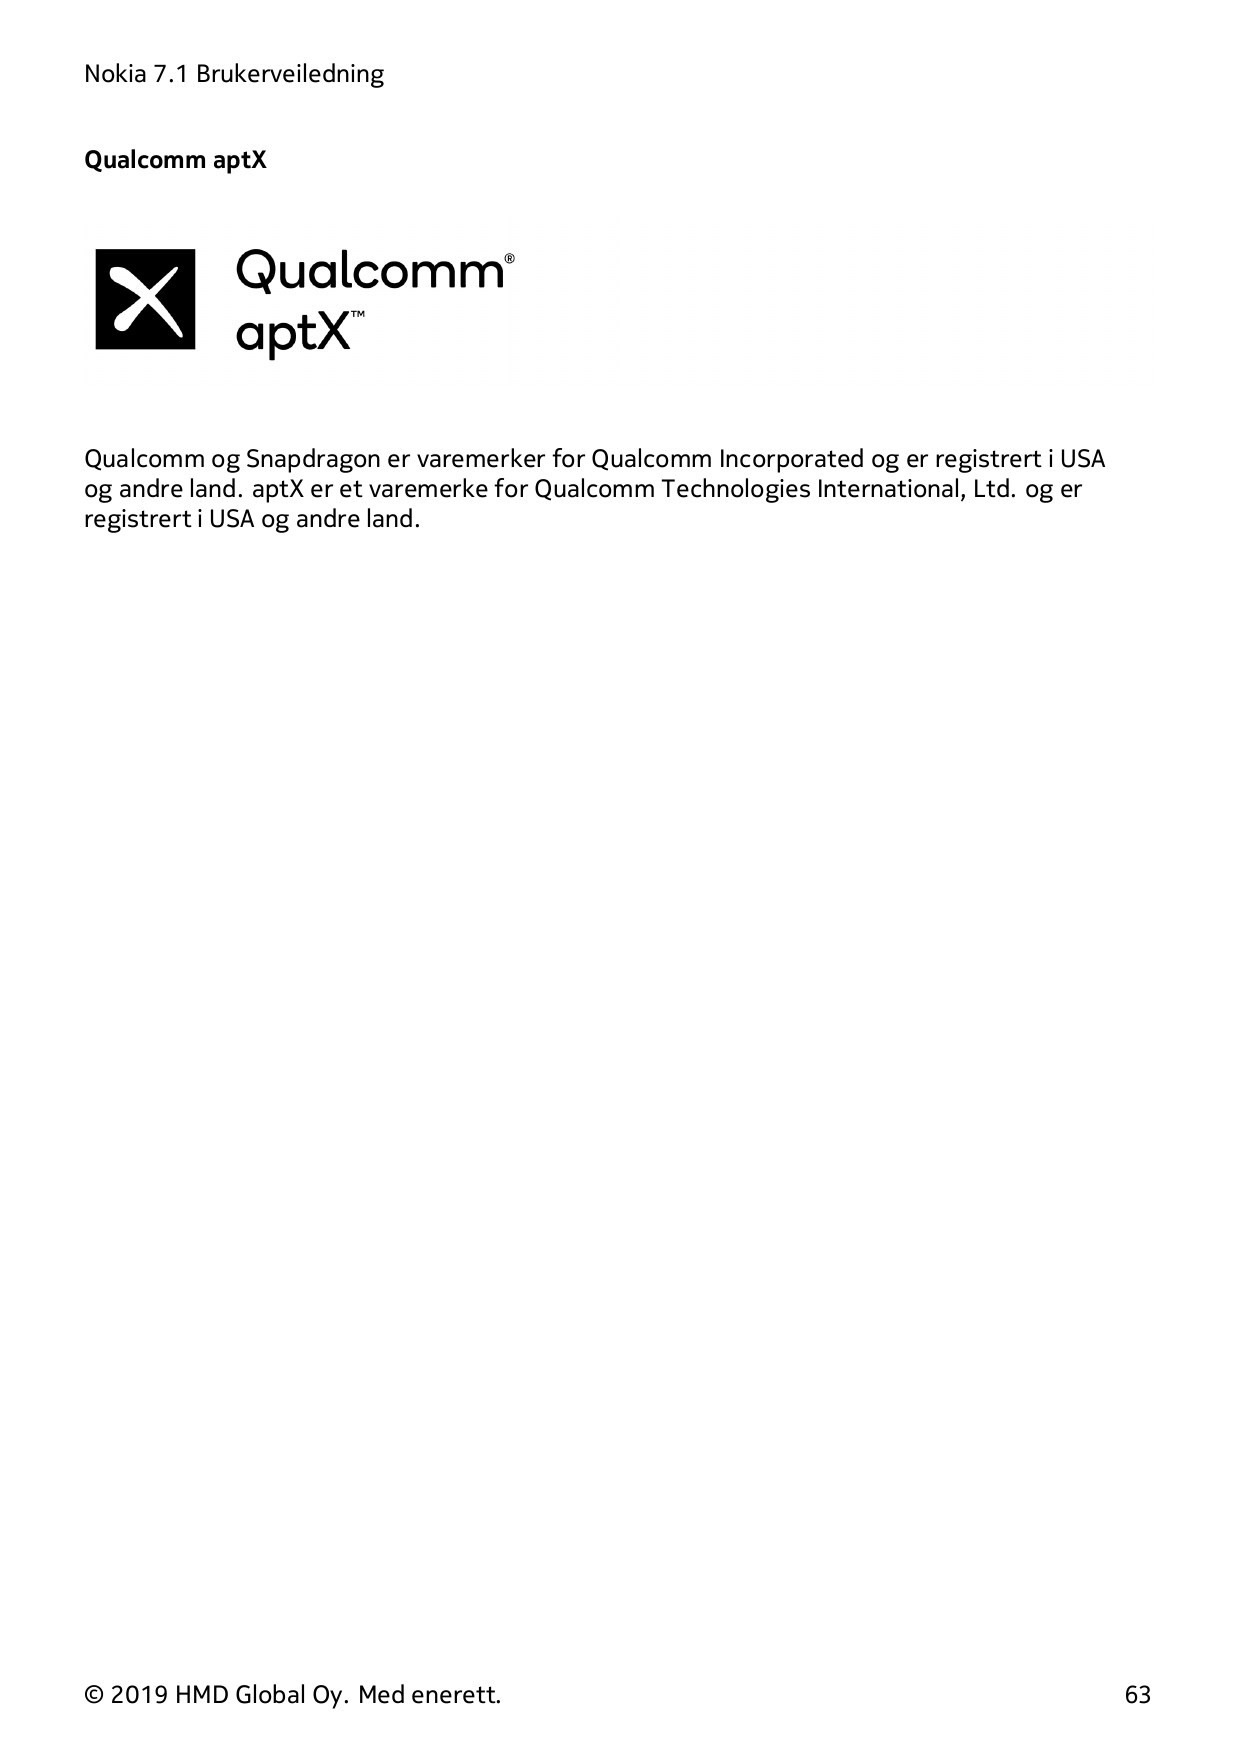 Nokia 7.1 BrukerveiledningQualcomm aptXQualcomm og Snapdragon er varemerker for Qualcomm Incorporated og er registrert i USAog a